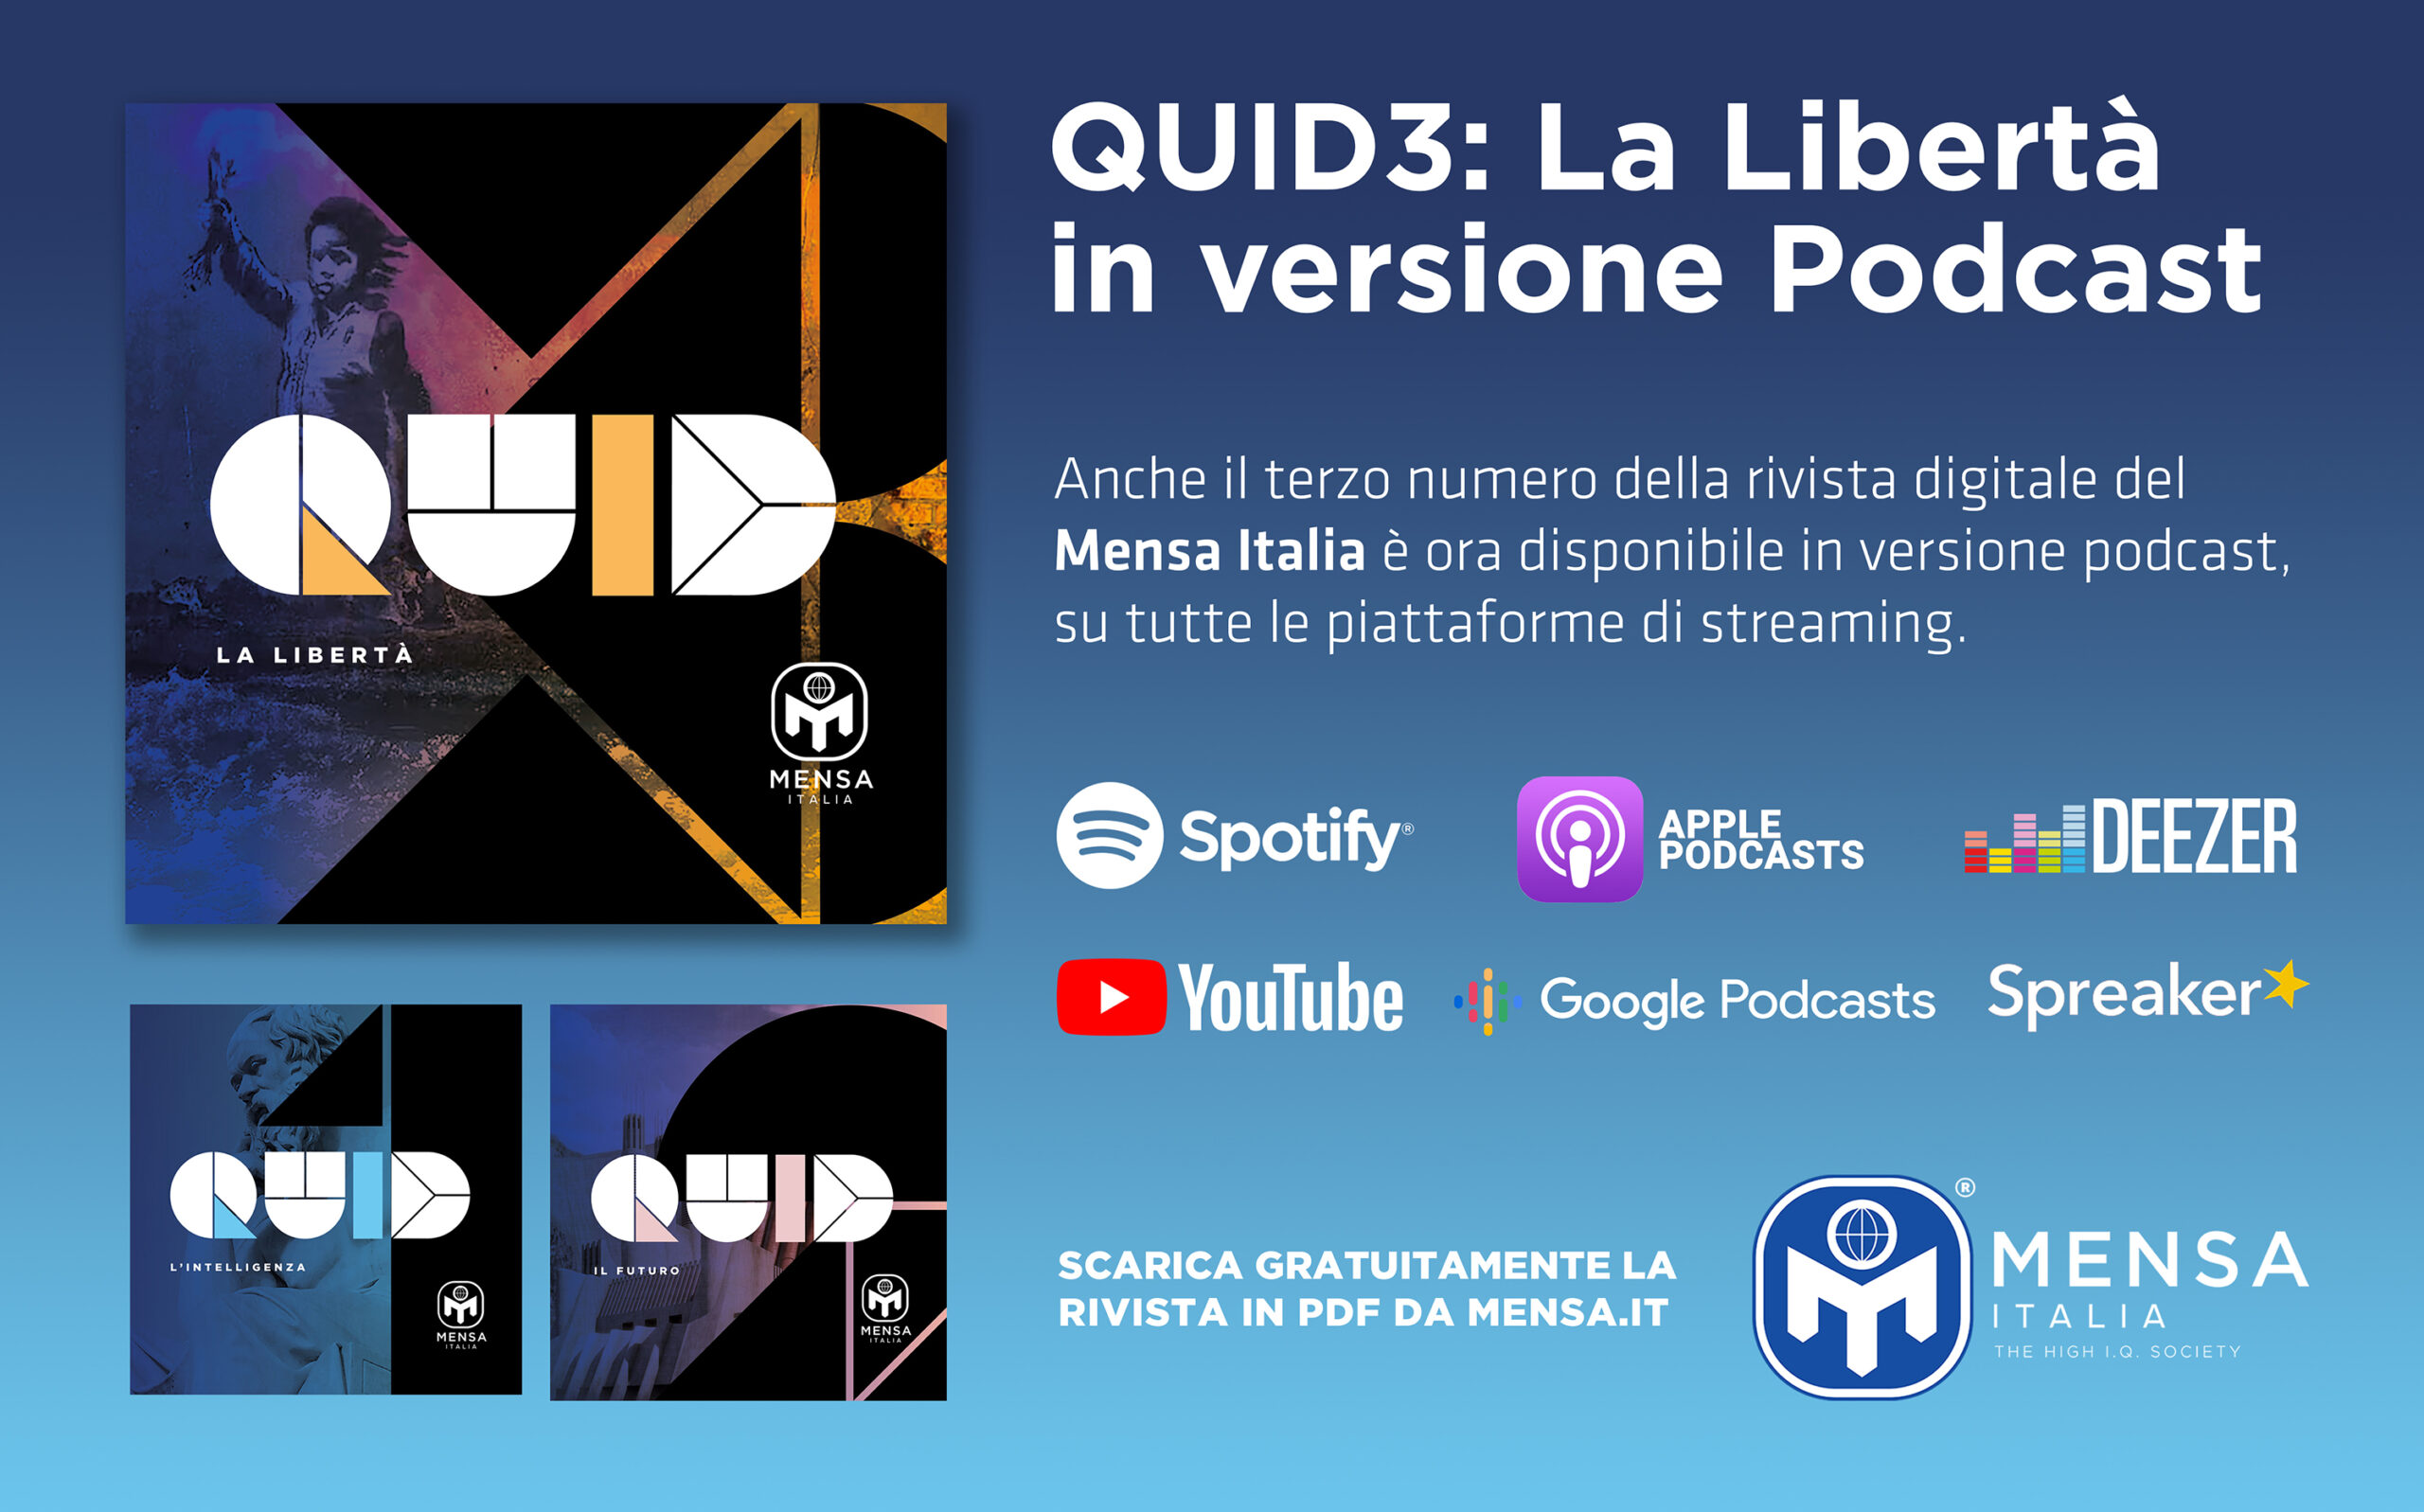 Quid 3 – La libertà, in versione podcast